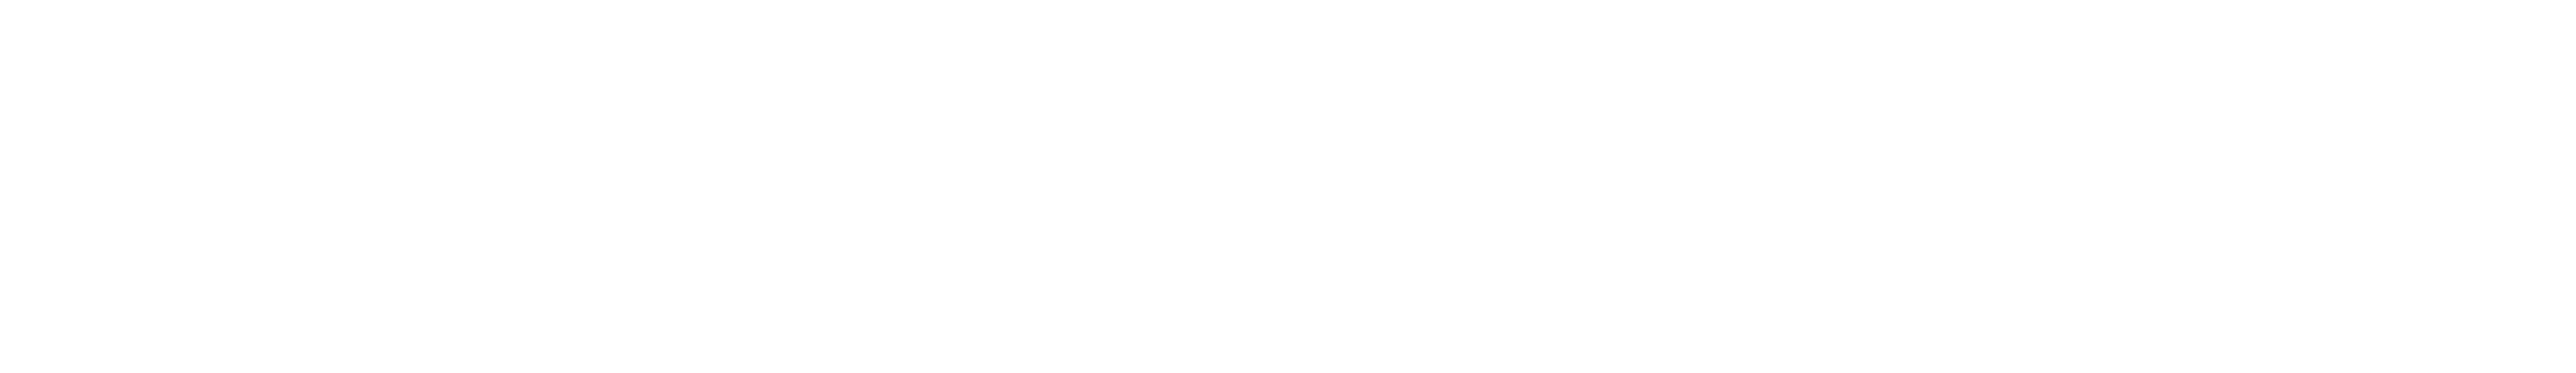 Education Innovation Logo